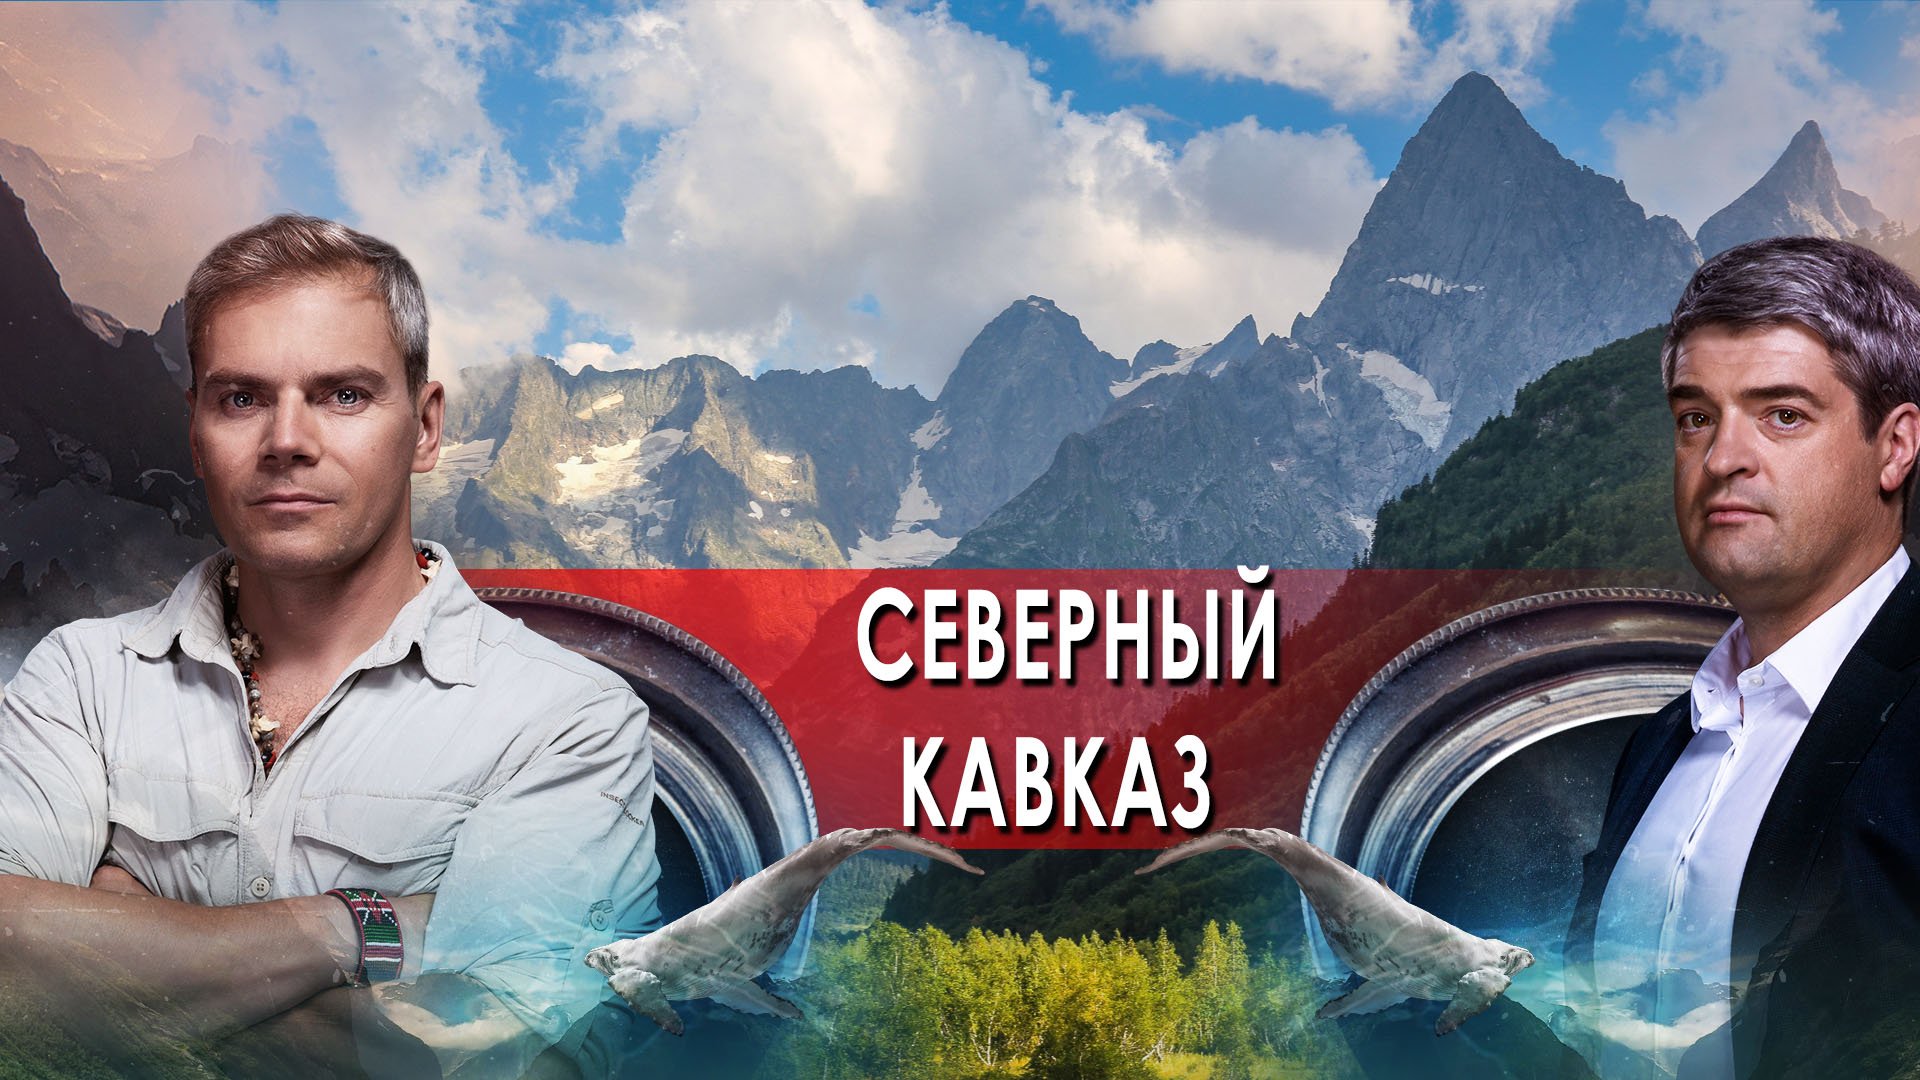 Северный Кавказ — НИИ: Путеводитель